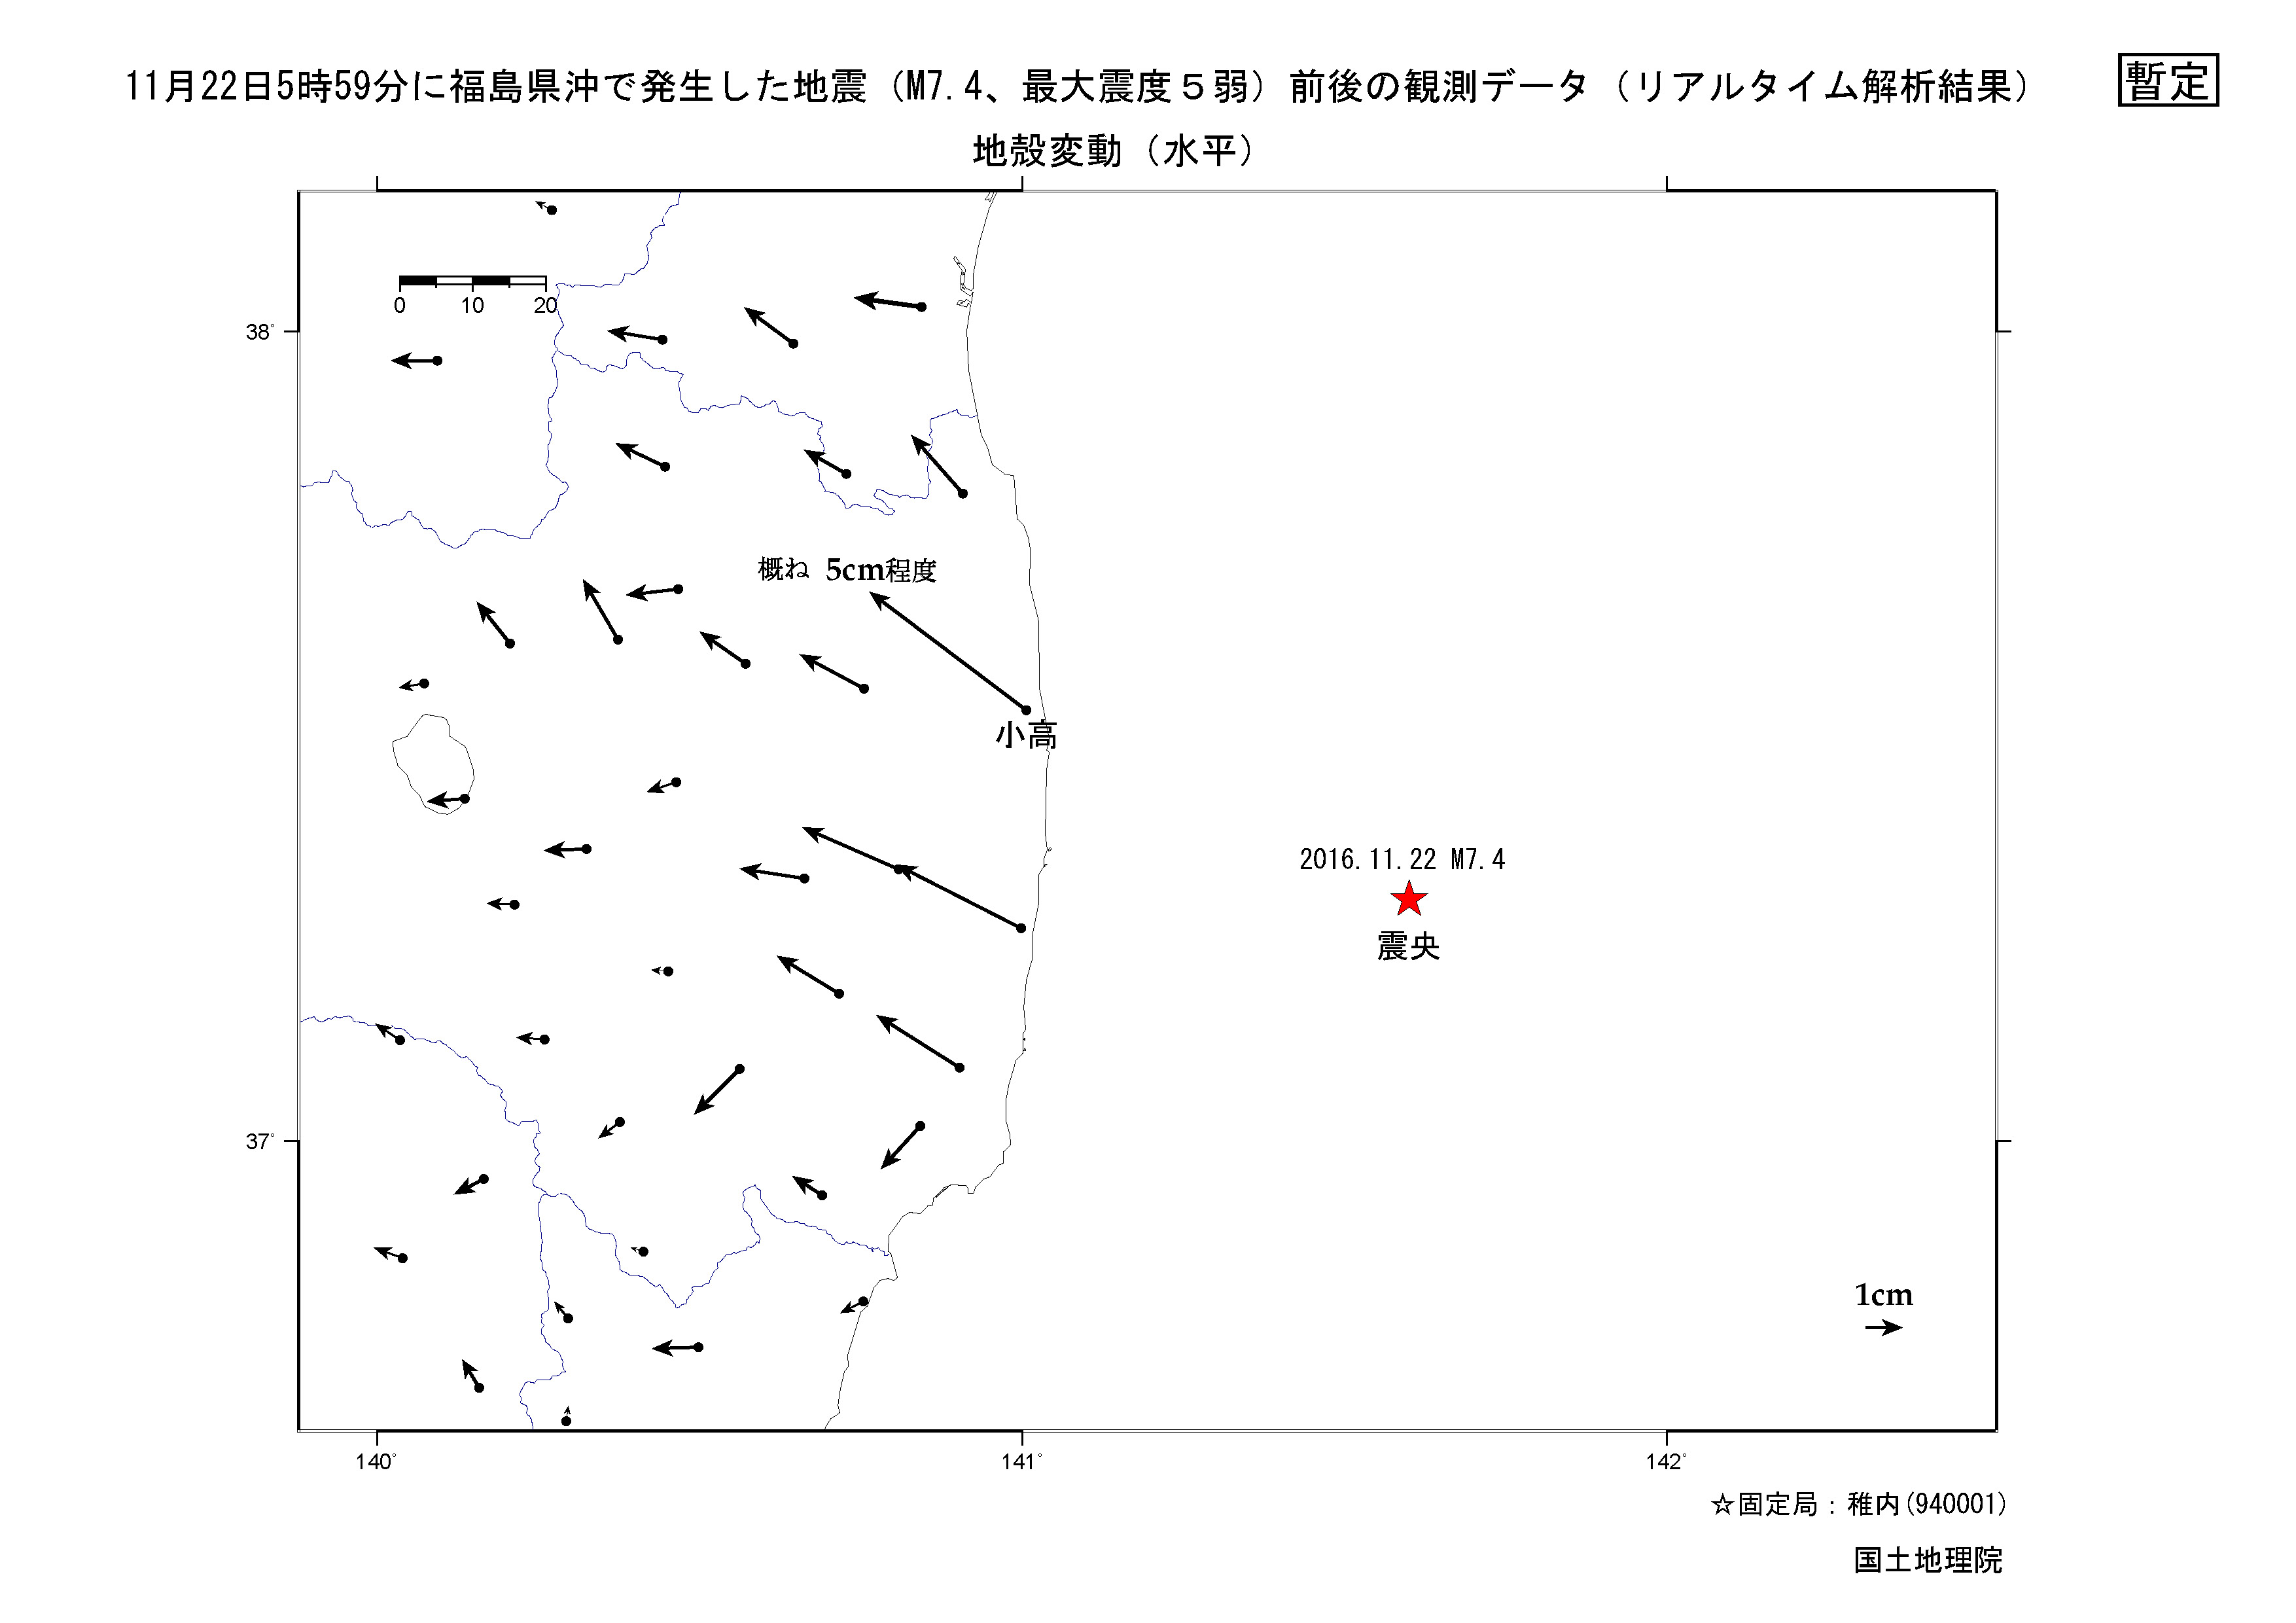 11月22日福島県沖の地震のリアルタイム解析結果